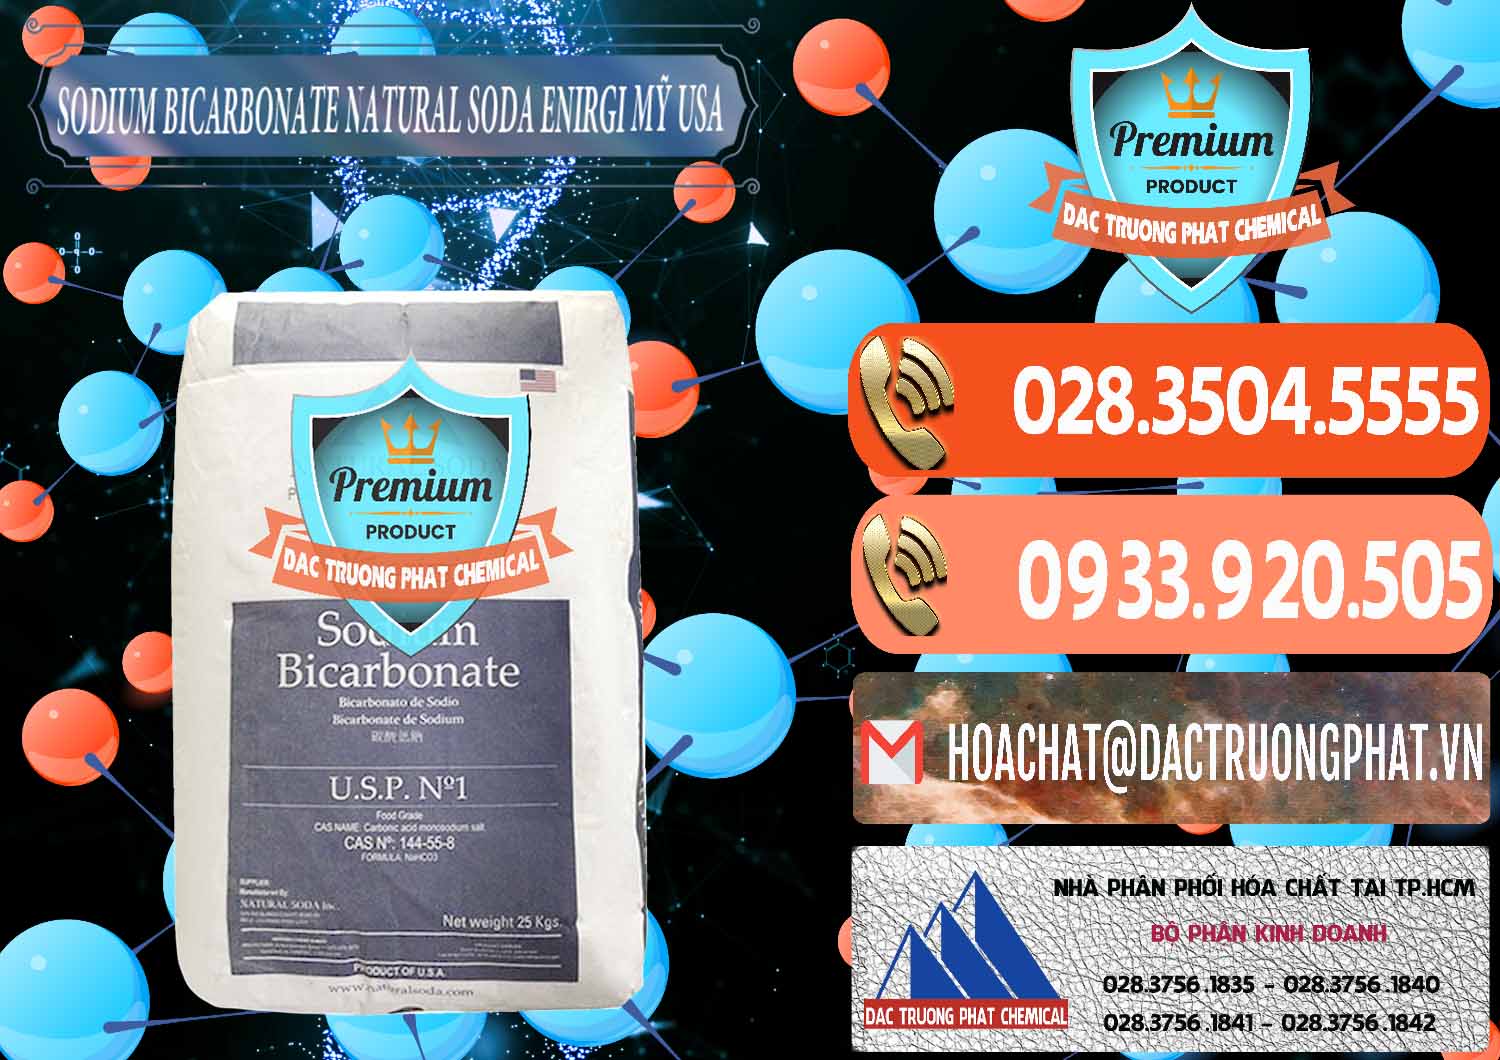 Nơi cung cấp & bán Sodium Bicarbonate – Bicar NaHCO3 Food Grade Natural Soda Enirgi Mỹ USA - 0257 - Nơi chuyên kinh doanh - cung cấp hóa chất tại TP.HCM - hoachatmientay.com